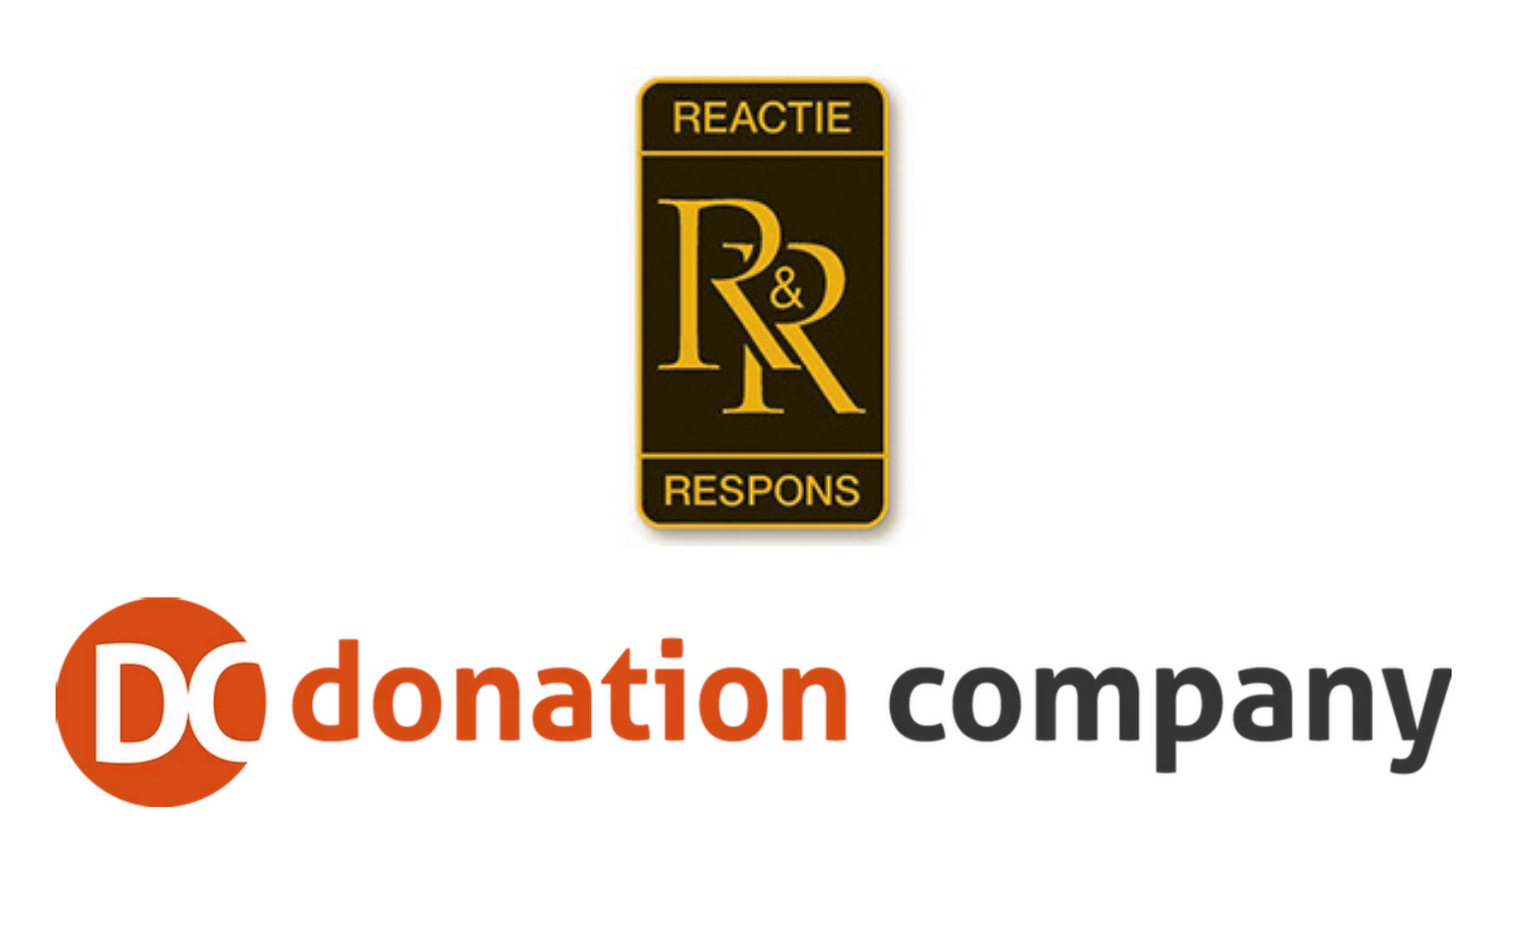 Reactie&Respons gaat per oktober 2020 Donation Company heten.